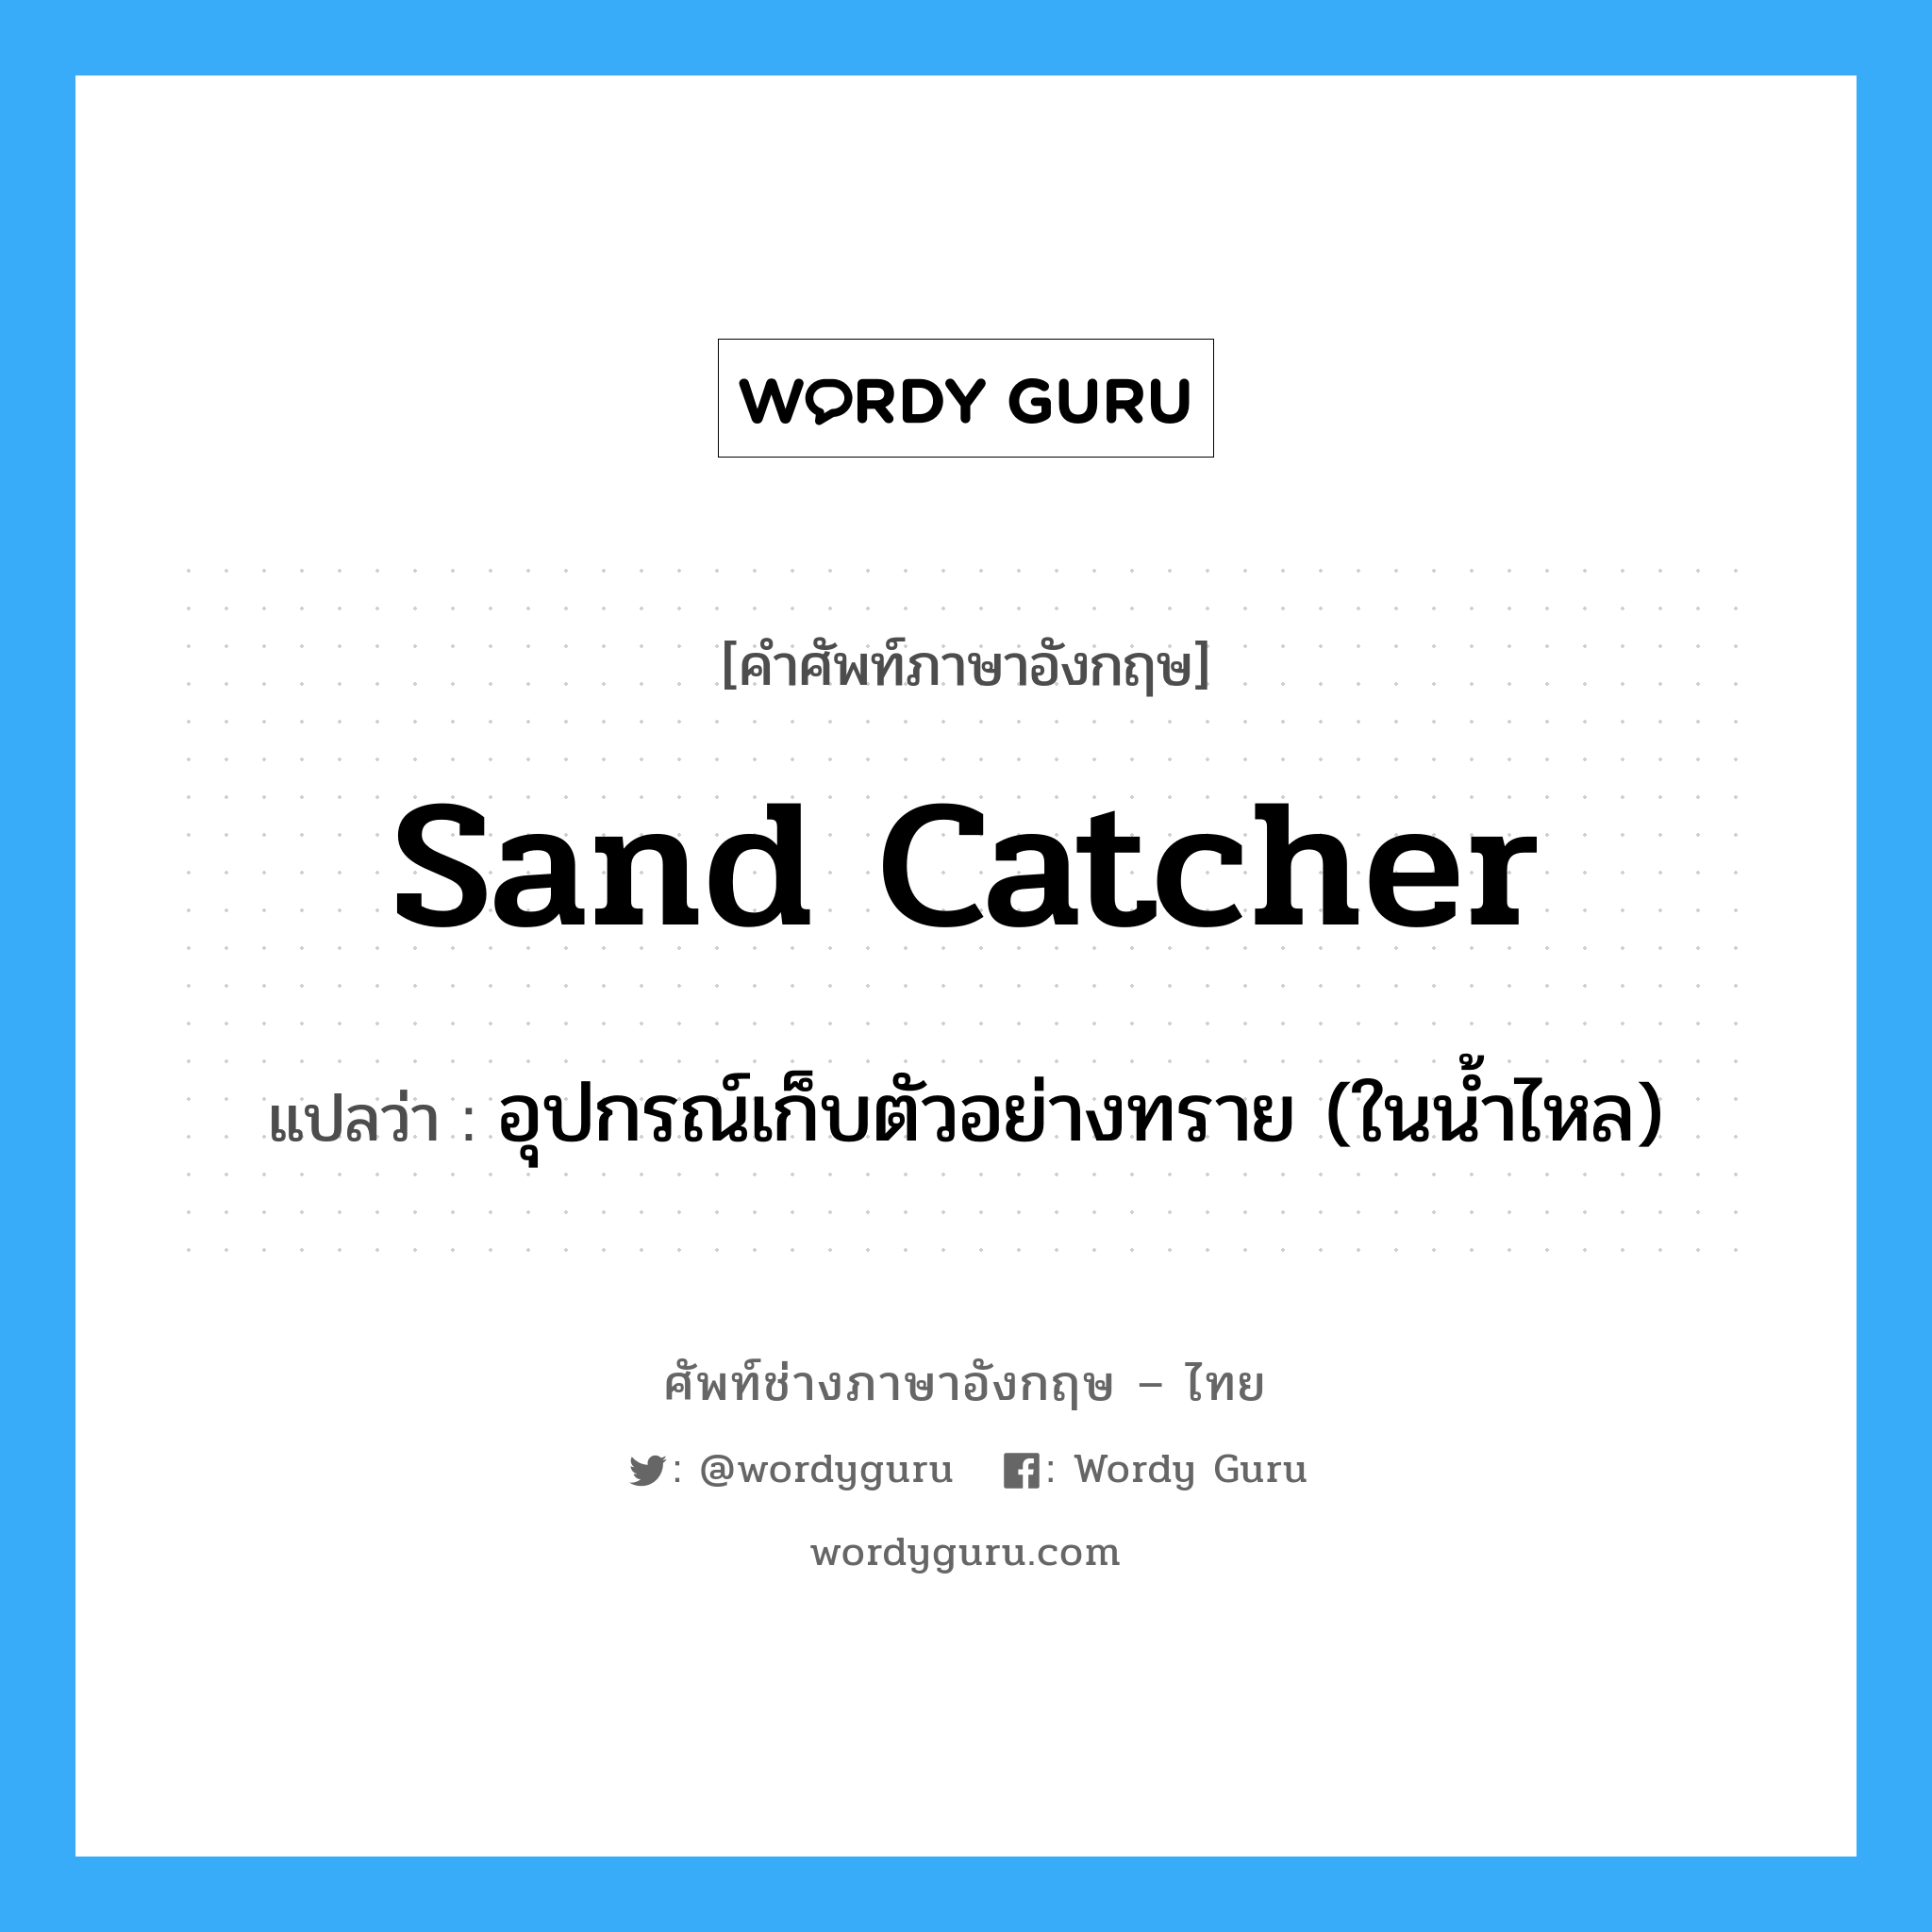 อุปกรณ์เก็บตัวอย่างทราย (ในน้ำไหล) ภาษาอังกฤษ?, คำศัพท์ช่างภาษาอังกฤษ - ไทย อุปกรณ์เก็บตัวอย่างทราย (ในน้ำไหล) คำศัพท์ภาษาอังกฤษ อุปกรณ์เก็บตัวอย่างทราย (ในน้ำไหล) แปลว่า sand catcher